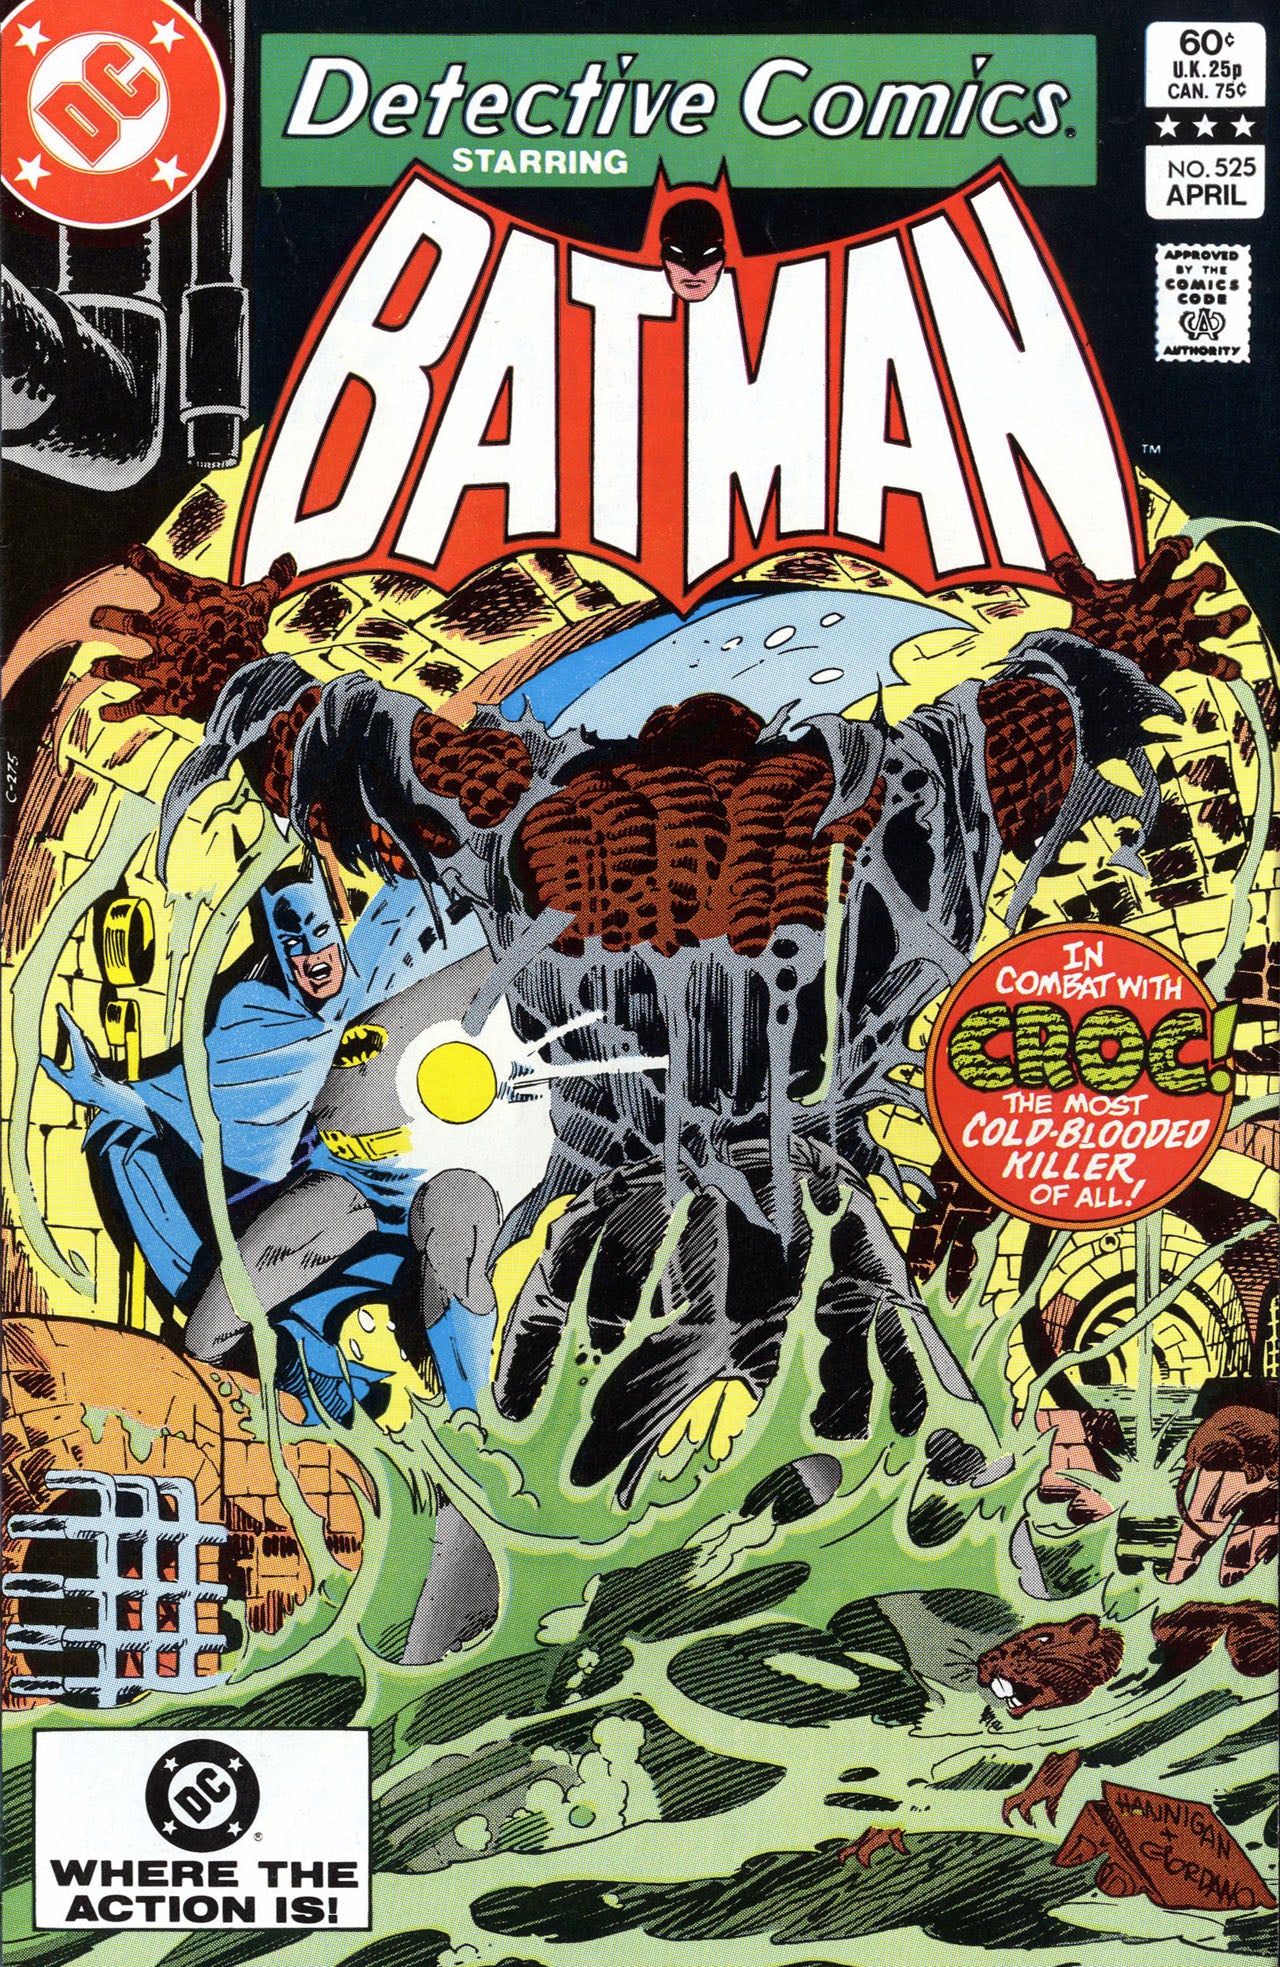 Detective Comics #525